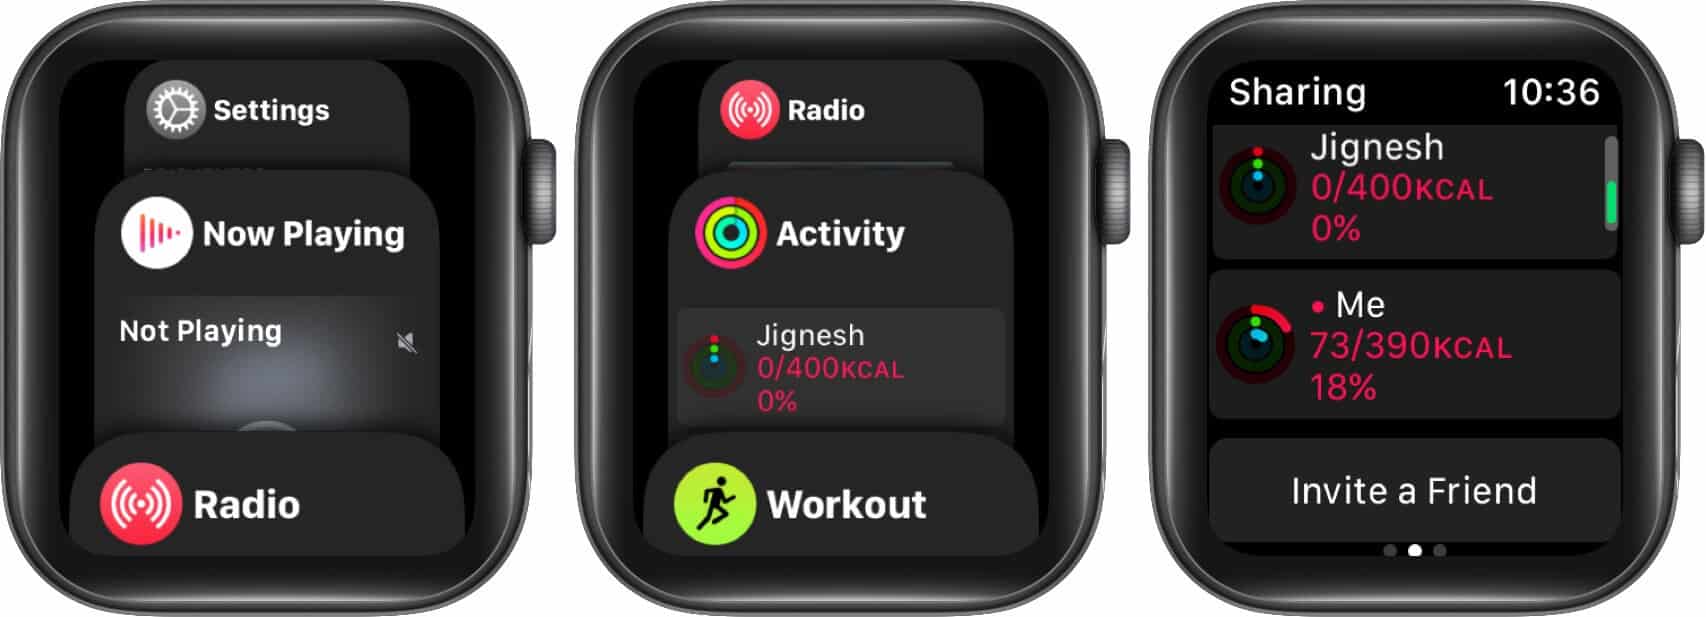 переключаться между приложениями в переключателе приложений на Apple Watch